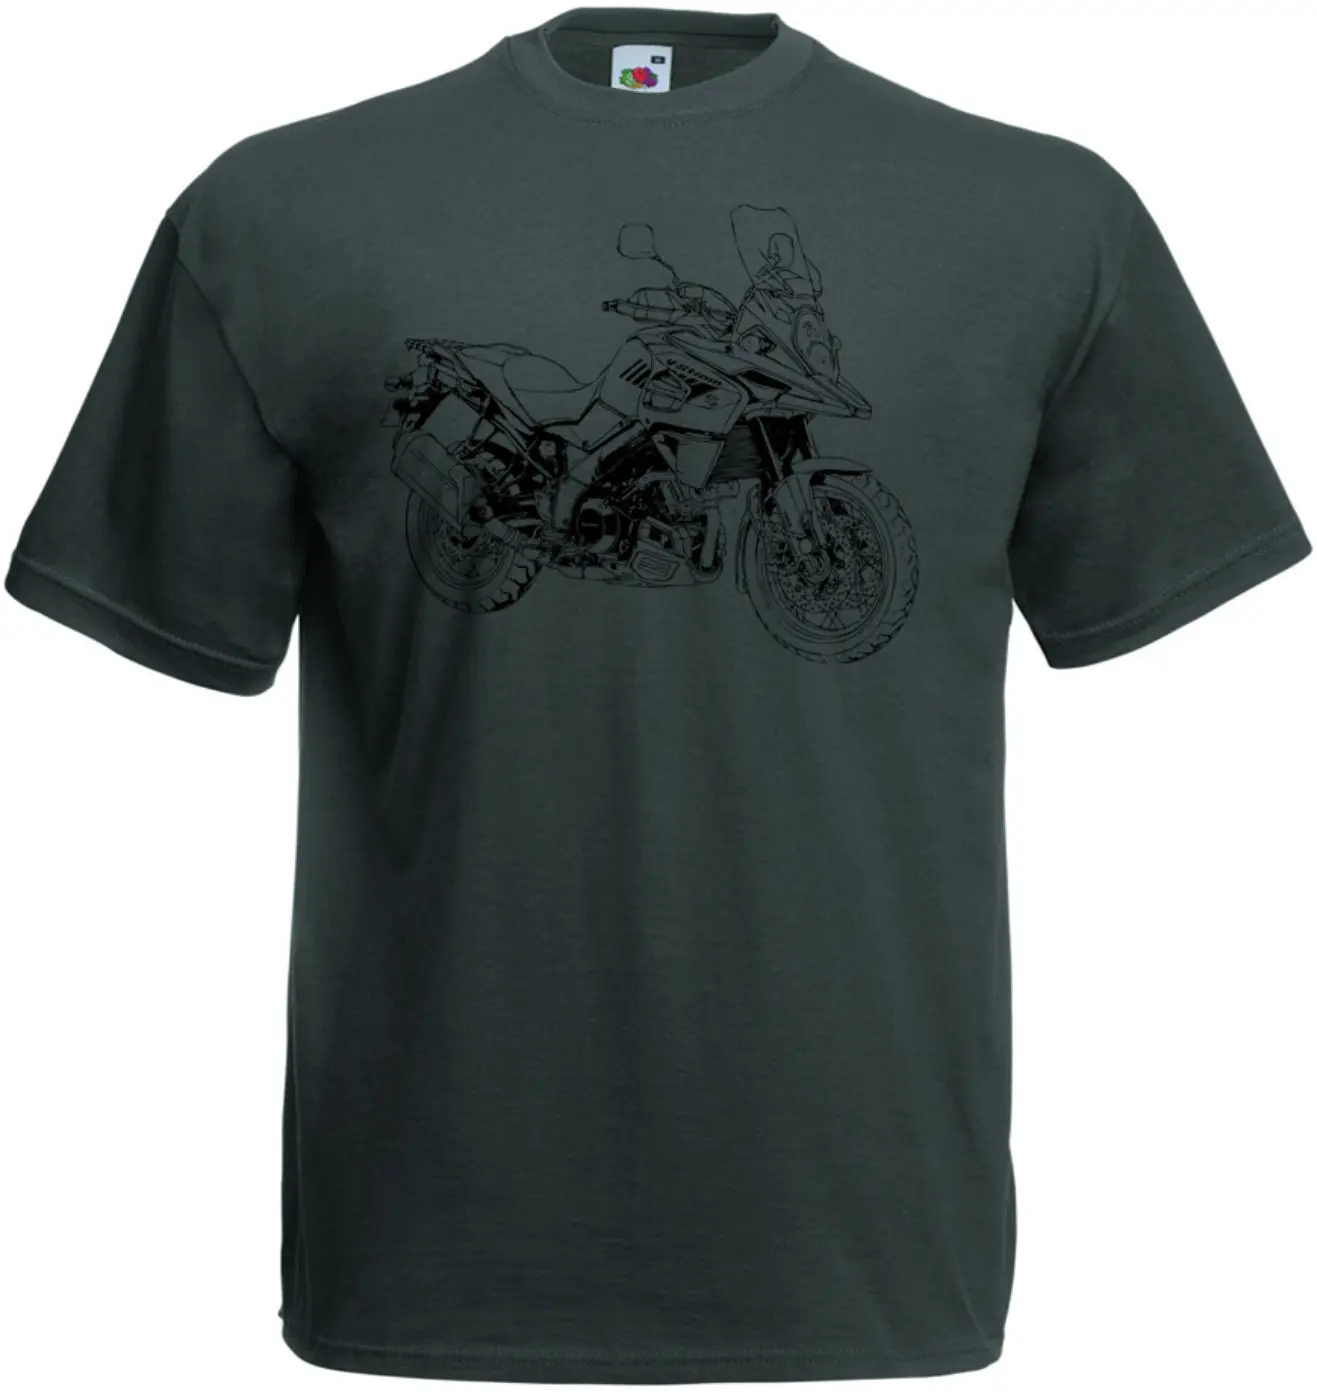 Новая летняя мужская хип-хоп футболка V-Strom 1000 футболка уличная мотоциклетная V Strom 650 тонкая футболка